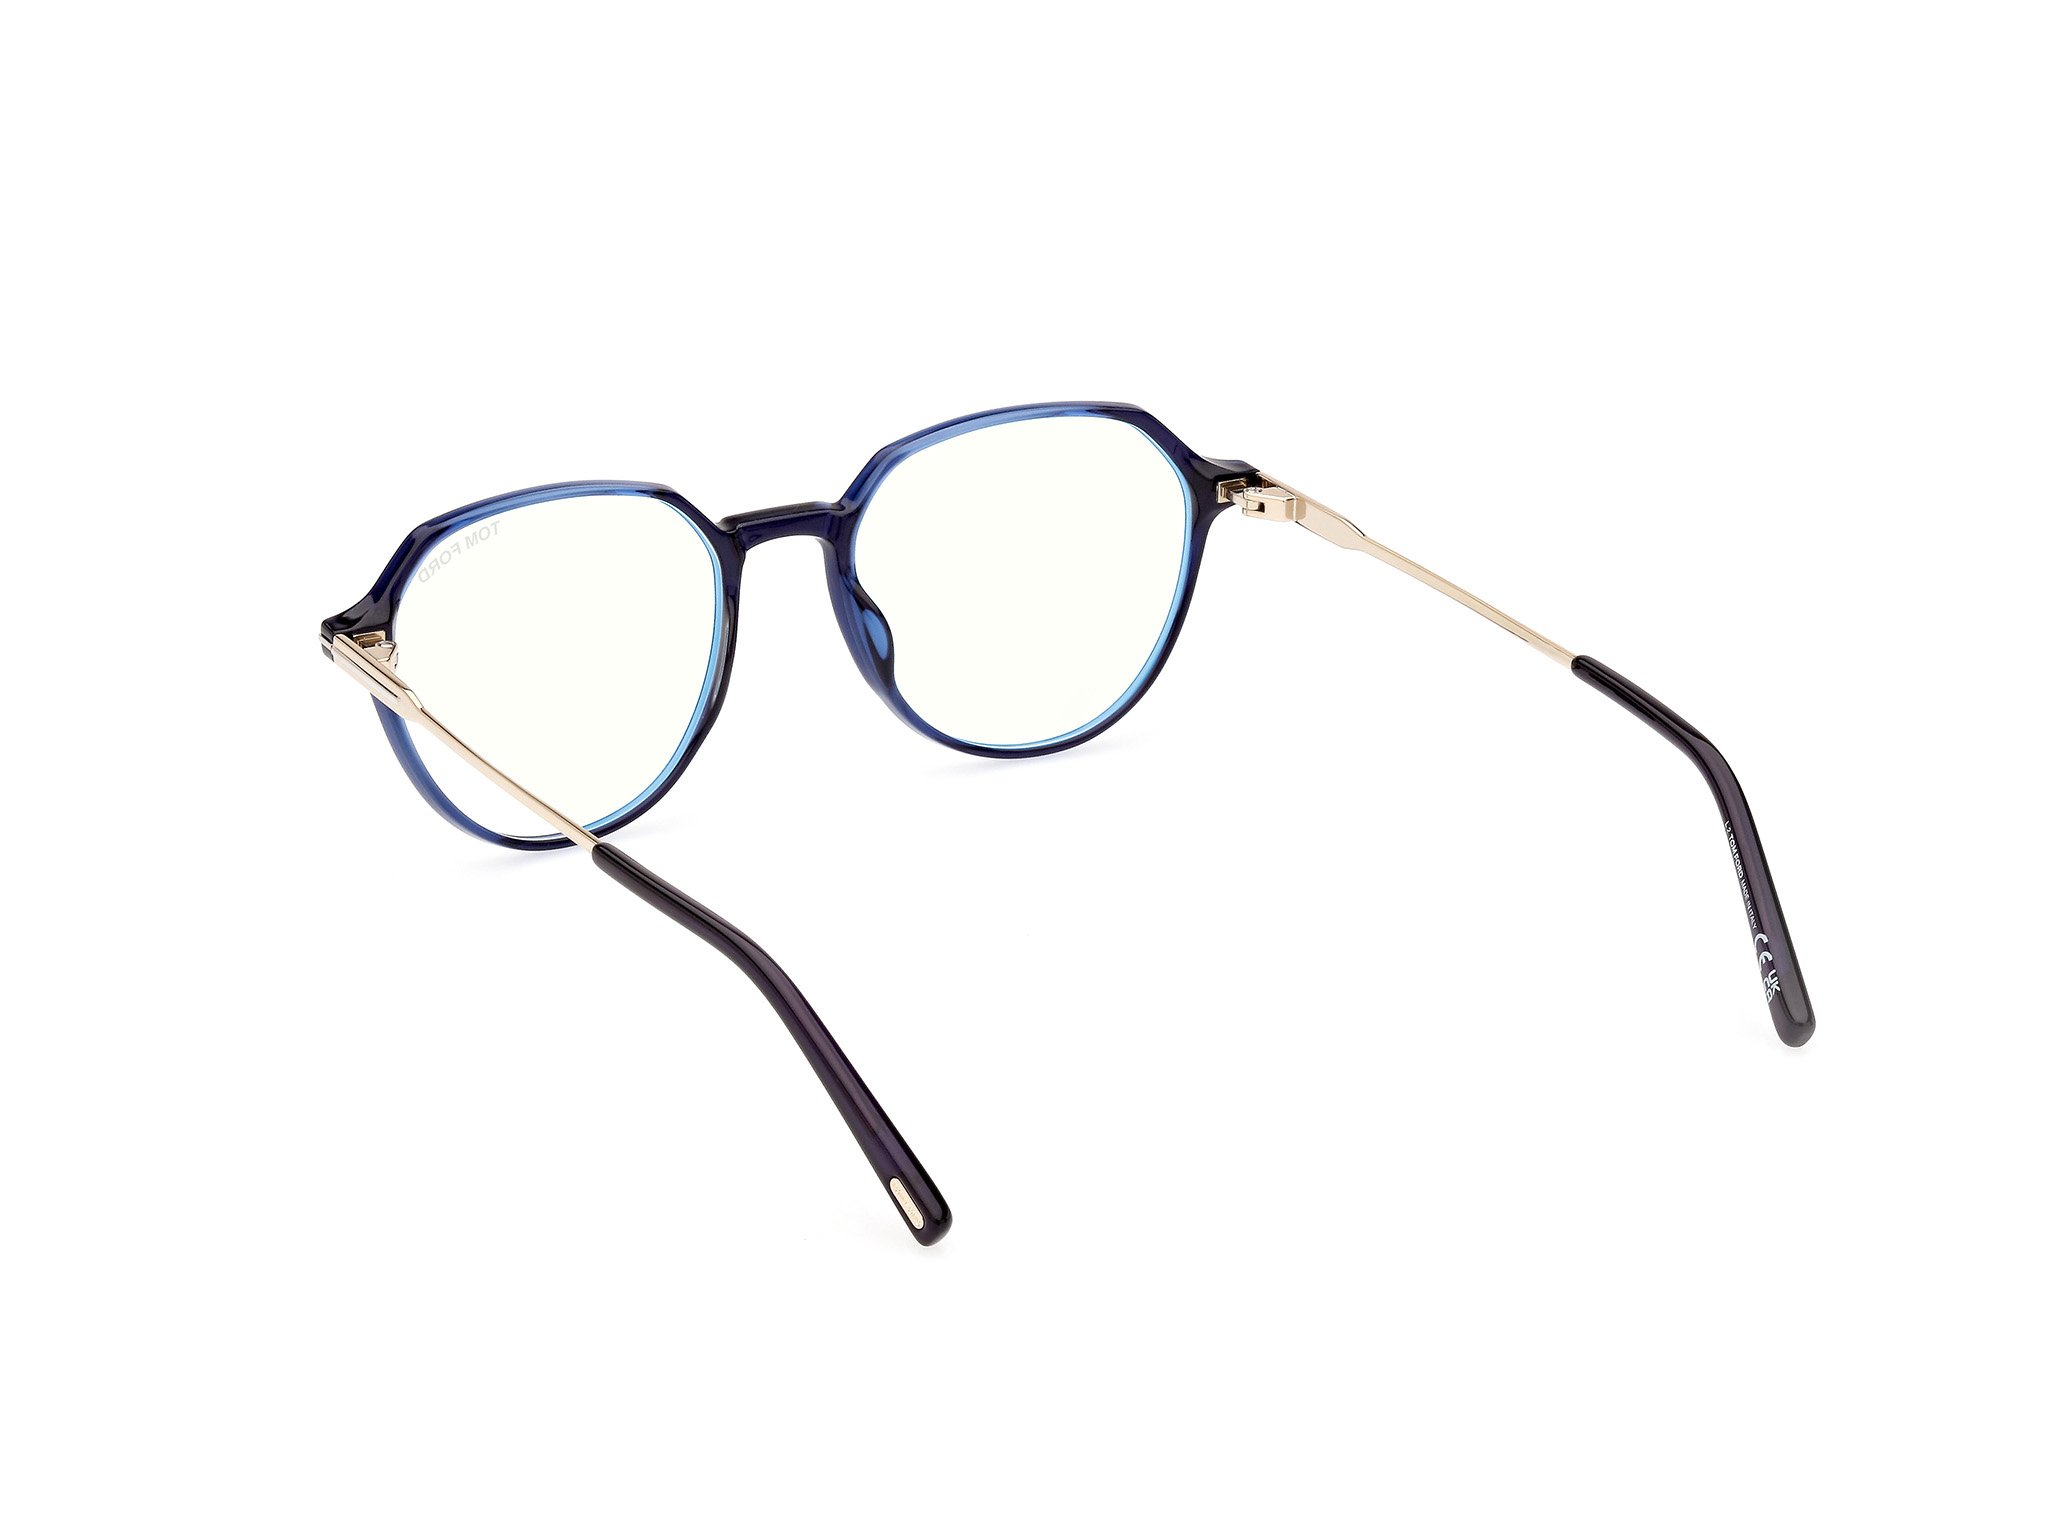 Das Bild zeigt die Korrektionsbrille FT5875-B 090 von der Marke Tom Ford in blau/gold.